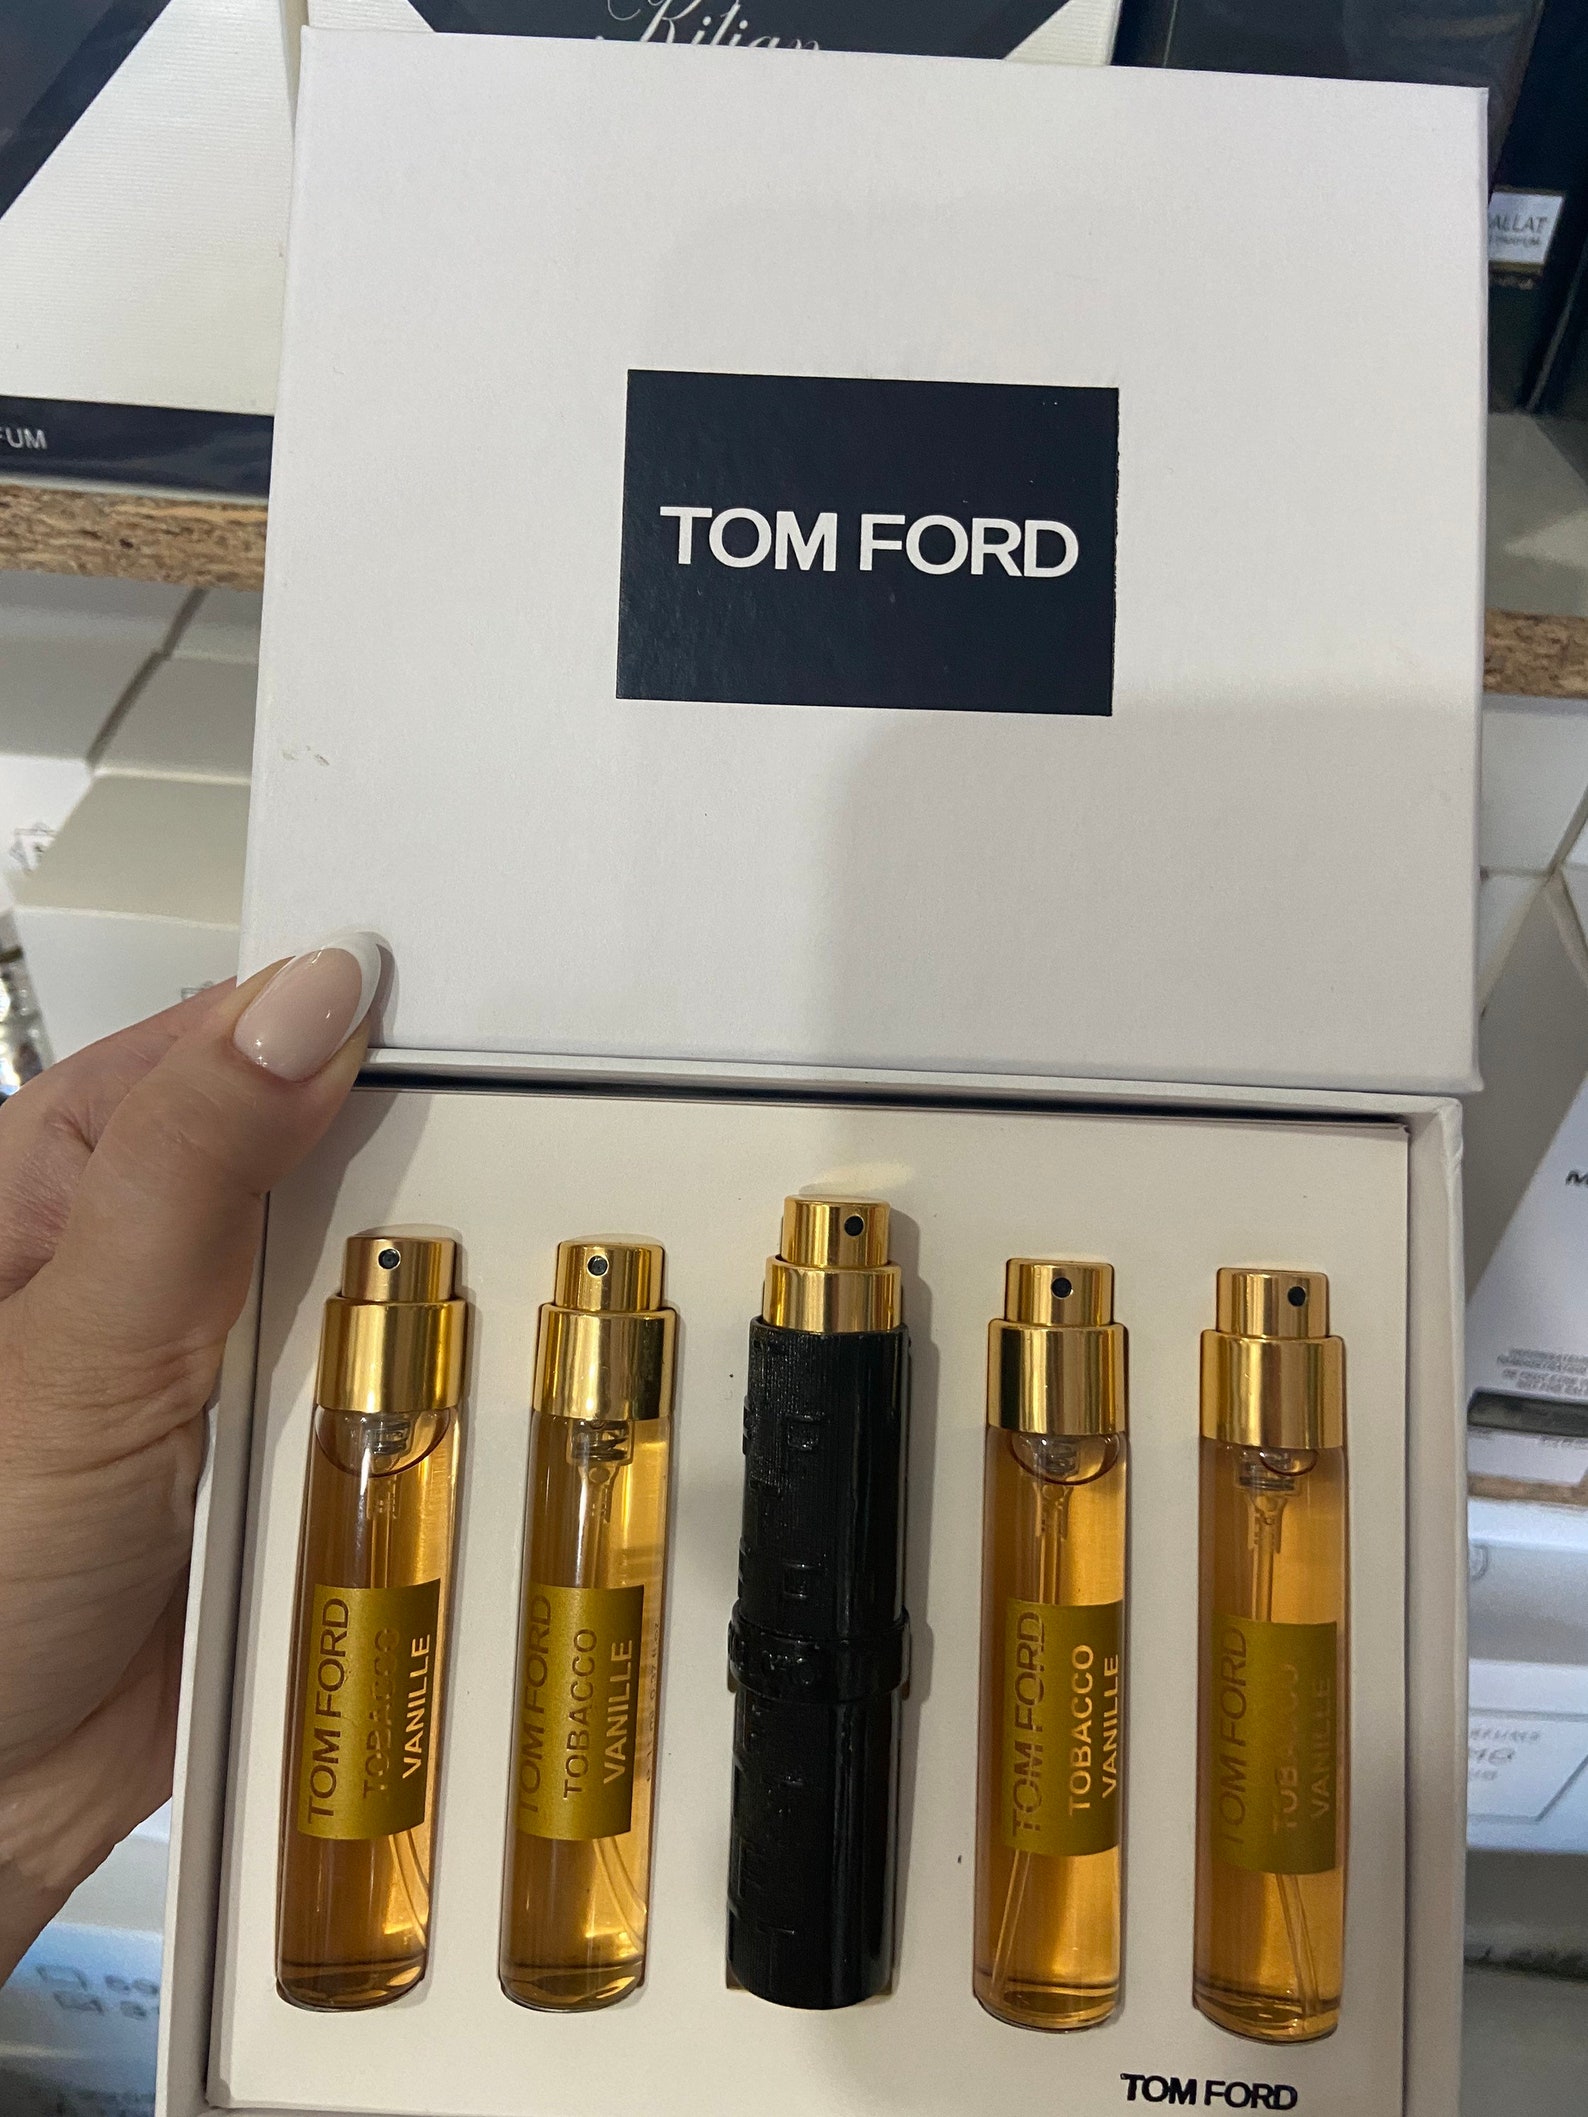 Tom Ford Tobacco Vanille gift box 5 х 11 ml | Etsy